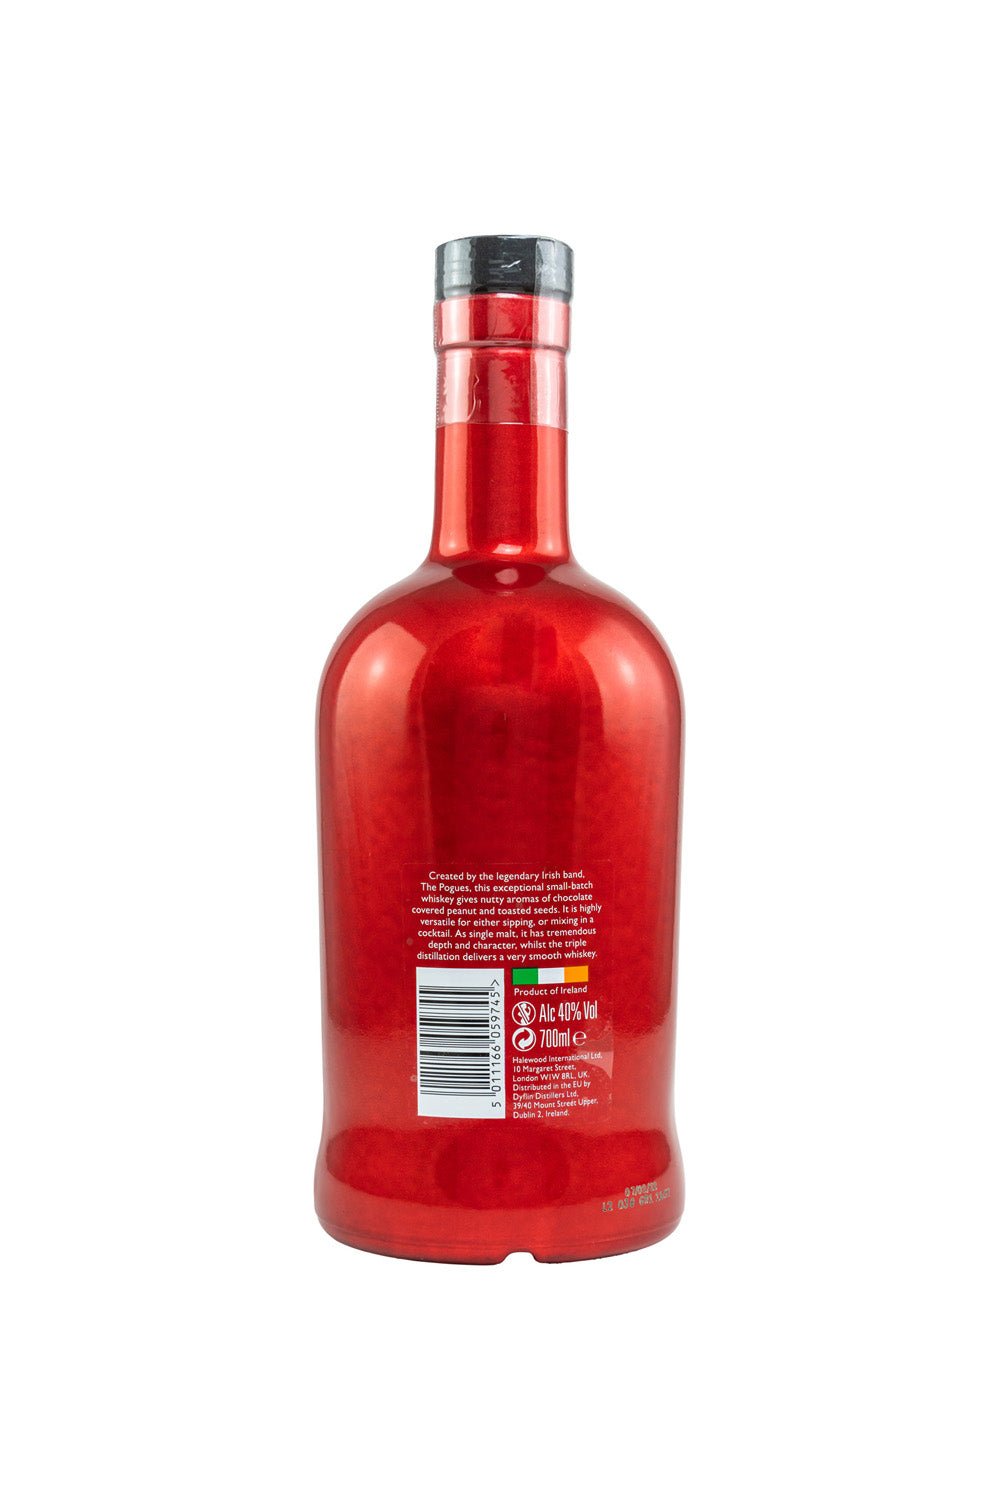 The Pogues Single Malt Irish Whiskey Rote Flasche 40% vol. 700ml - Maltimore